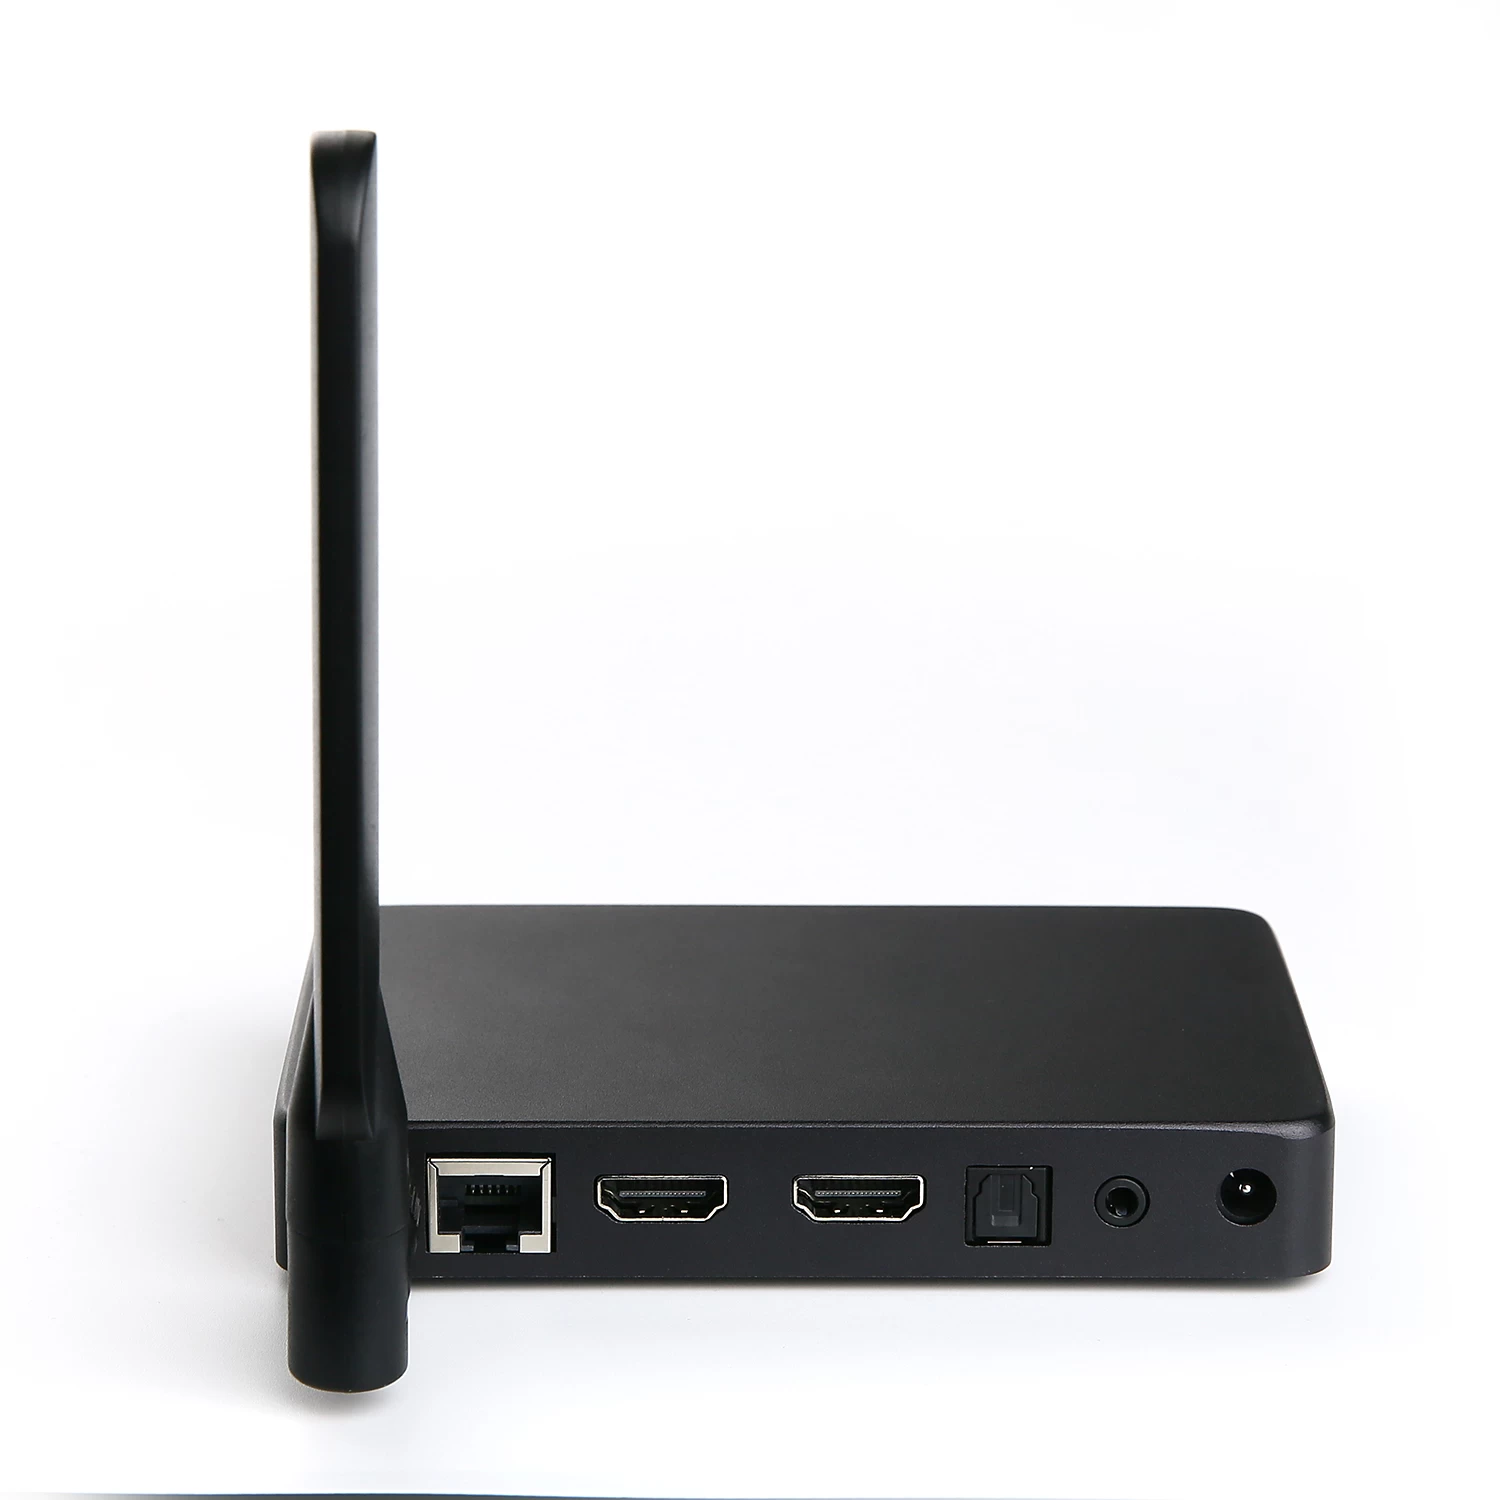 定制卓越 Realtek RTD1295 HDMI 输入转换器 X2 - Android 迷你 PC HDMI 电视棒 - 提升您的娱乐体验